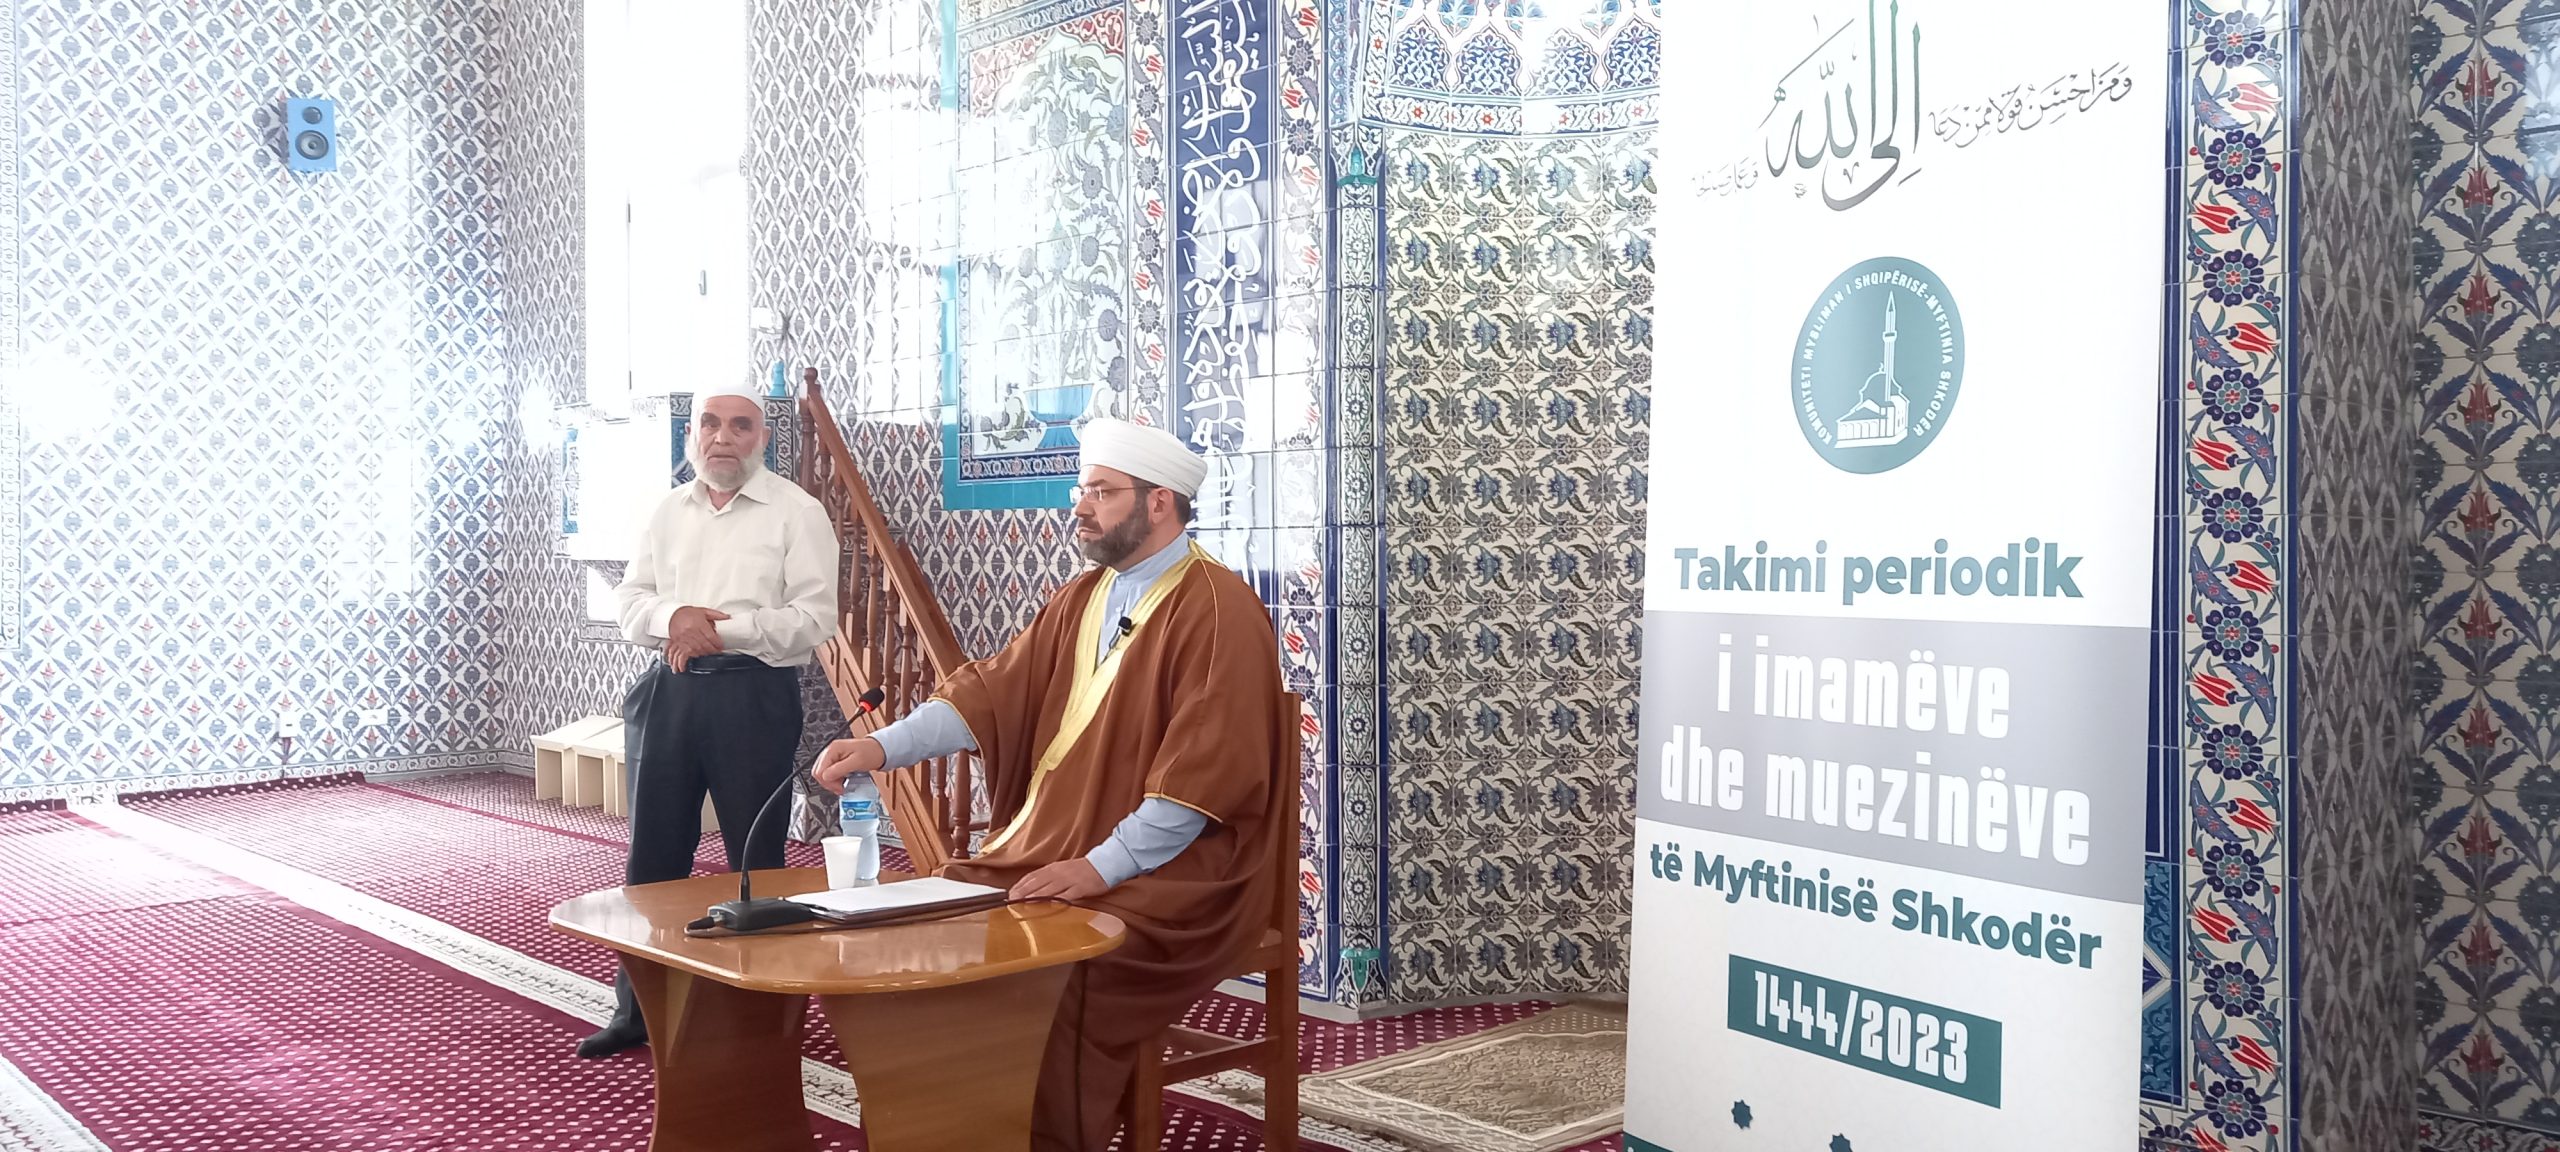 U zhvillua takimi periodik i imamëve dhe muezinëve të Shkodrës